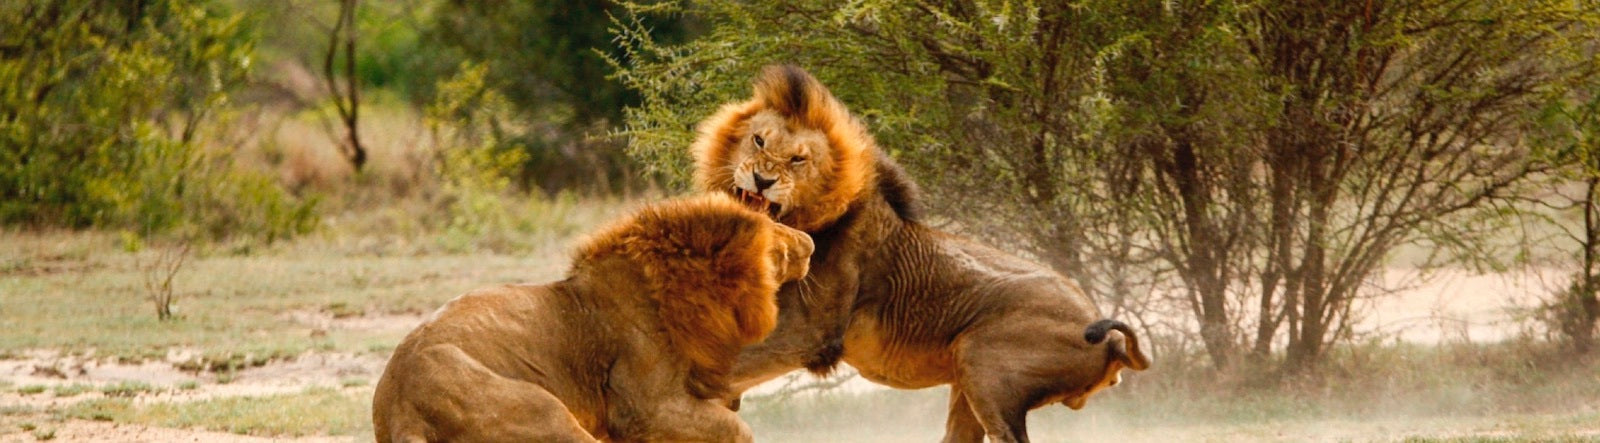 combat de deux Lions dans la savane africaine 